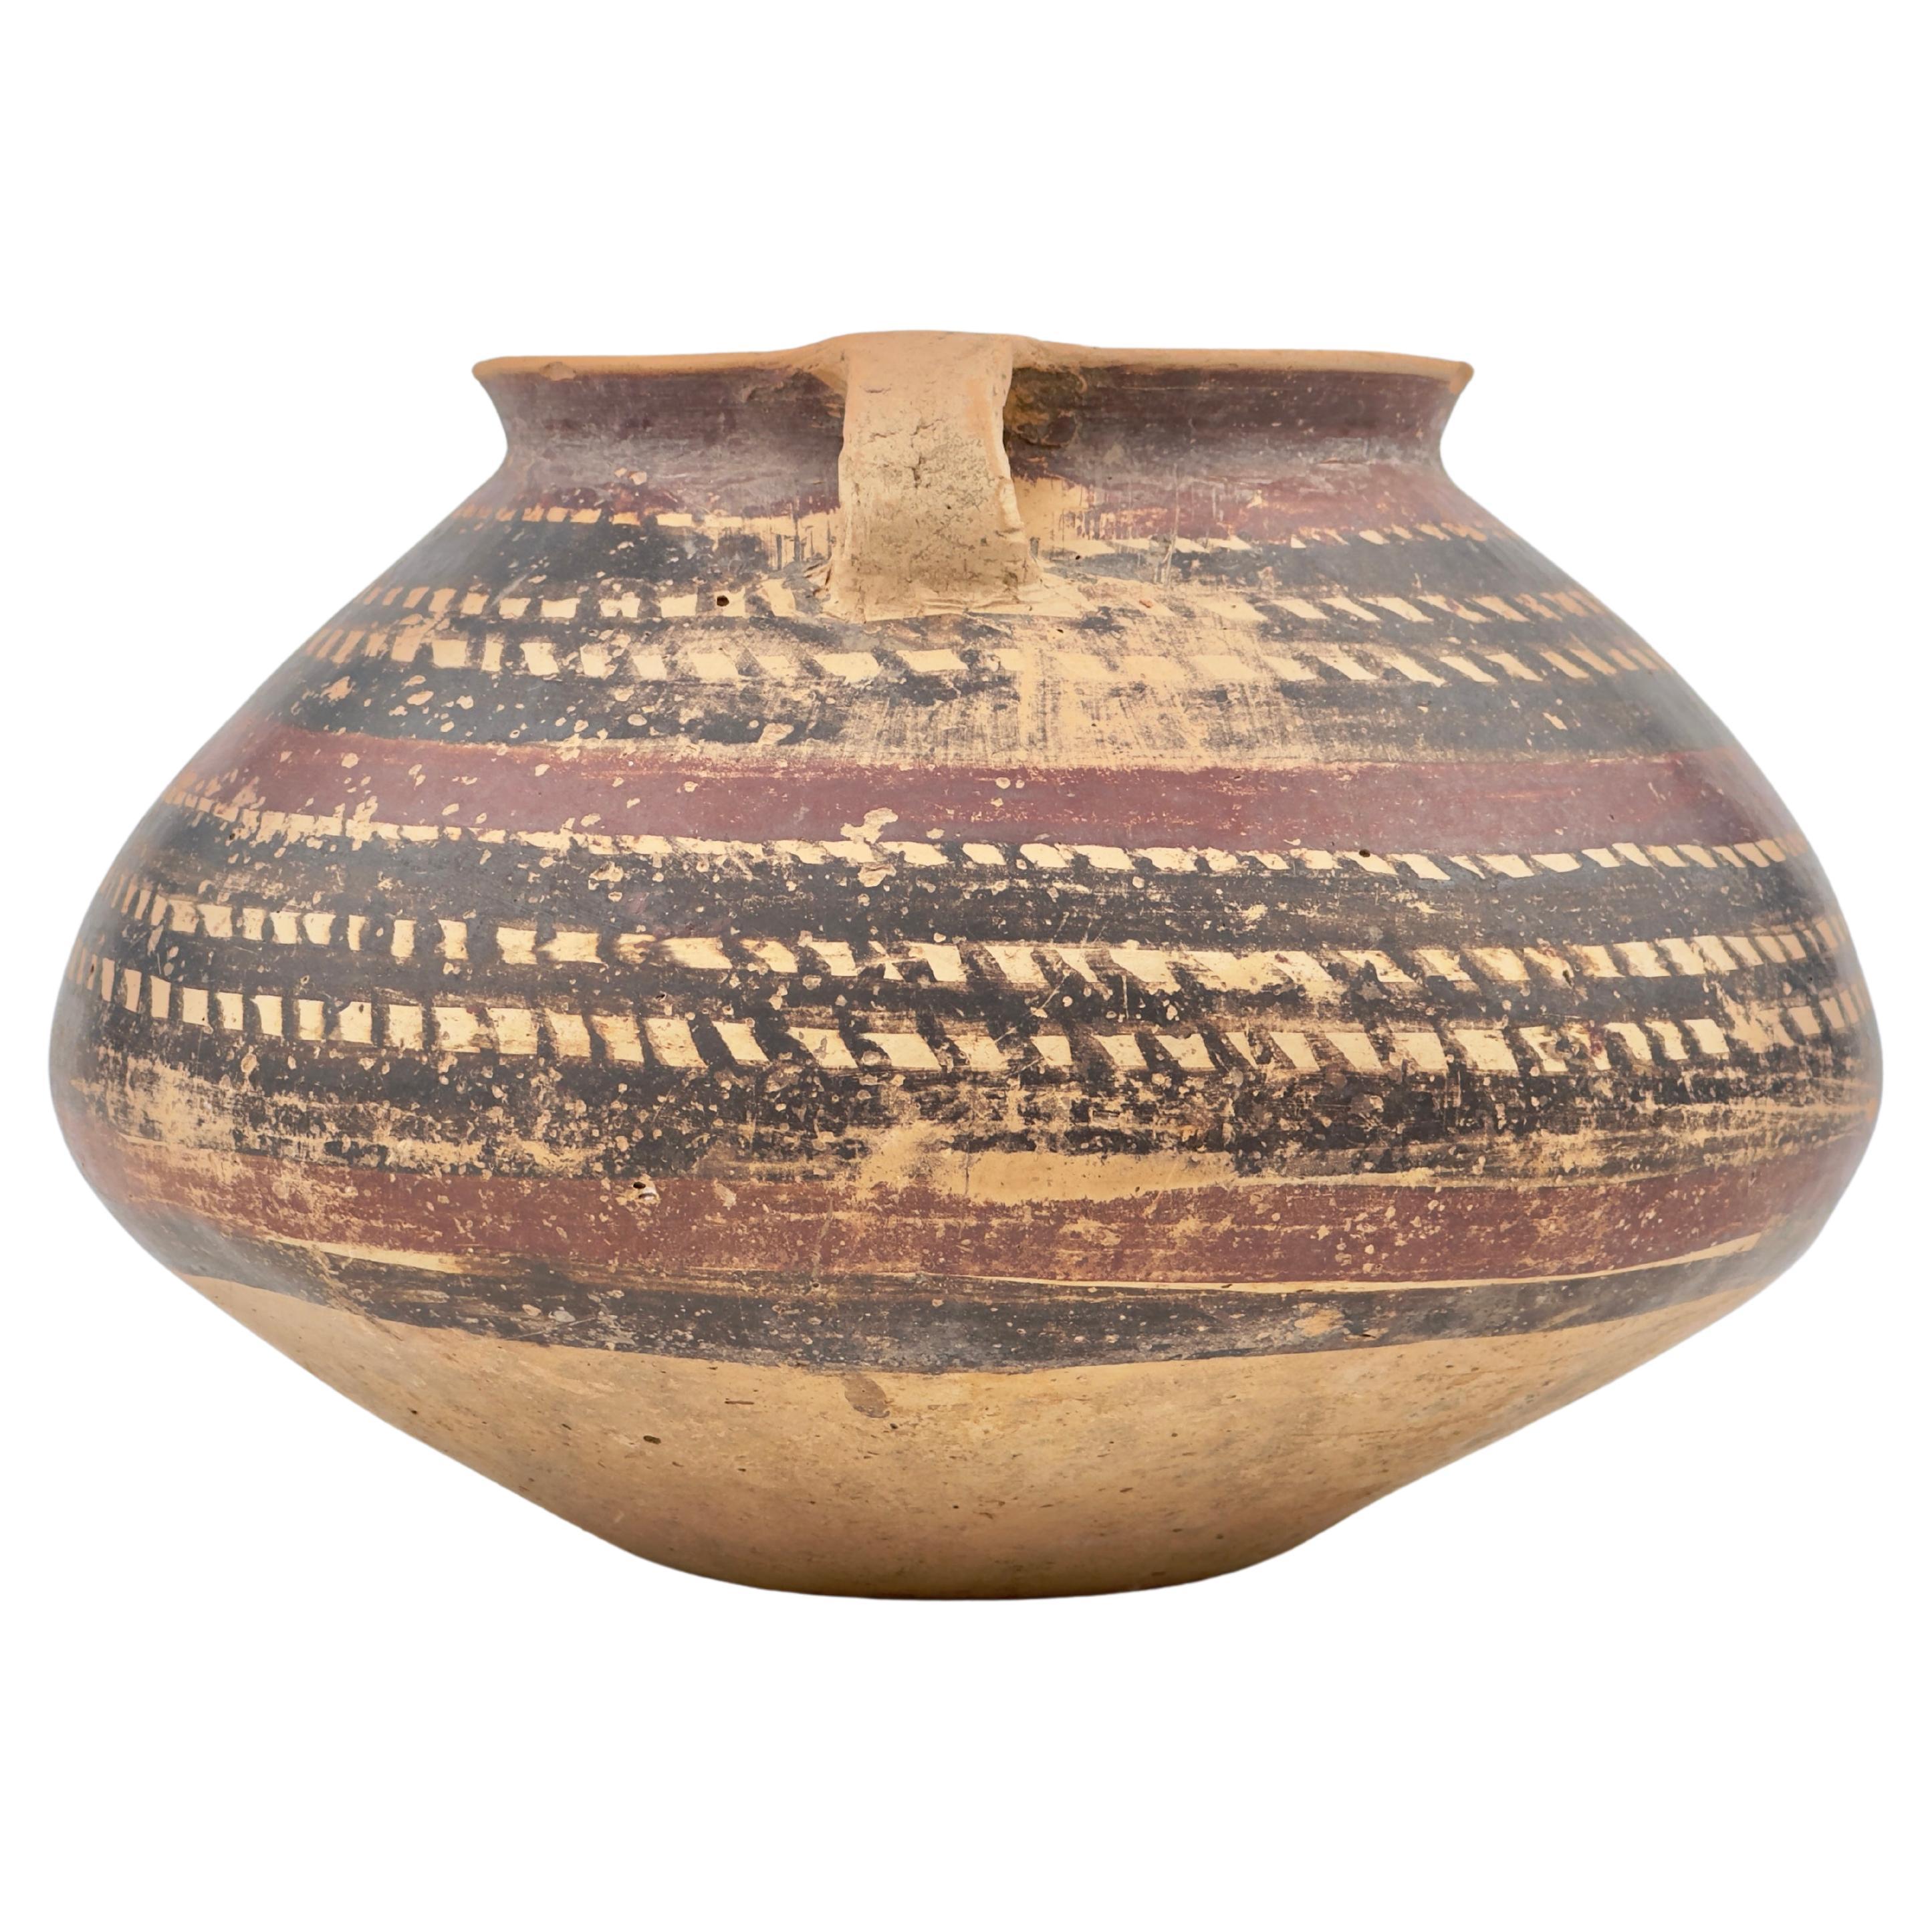 Neolithische Keramik-Amphora der Yangshao-Kultur, 3.-2. Jahrtausend v. Chr.